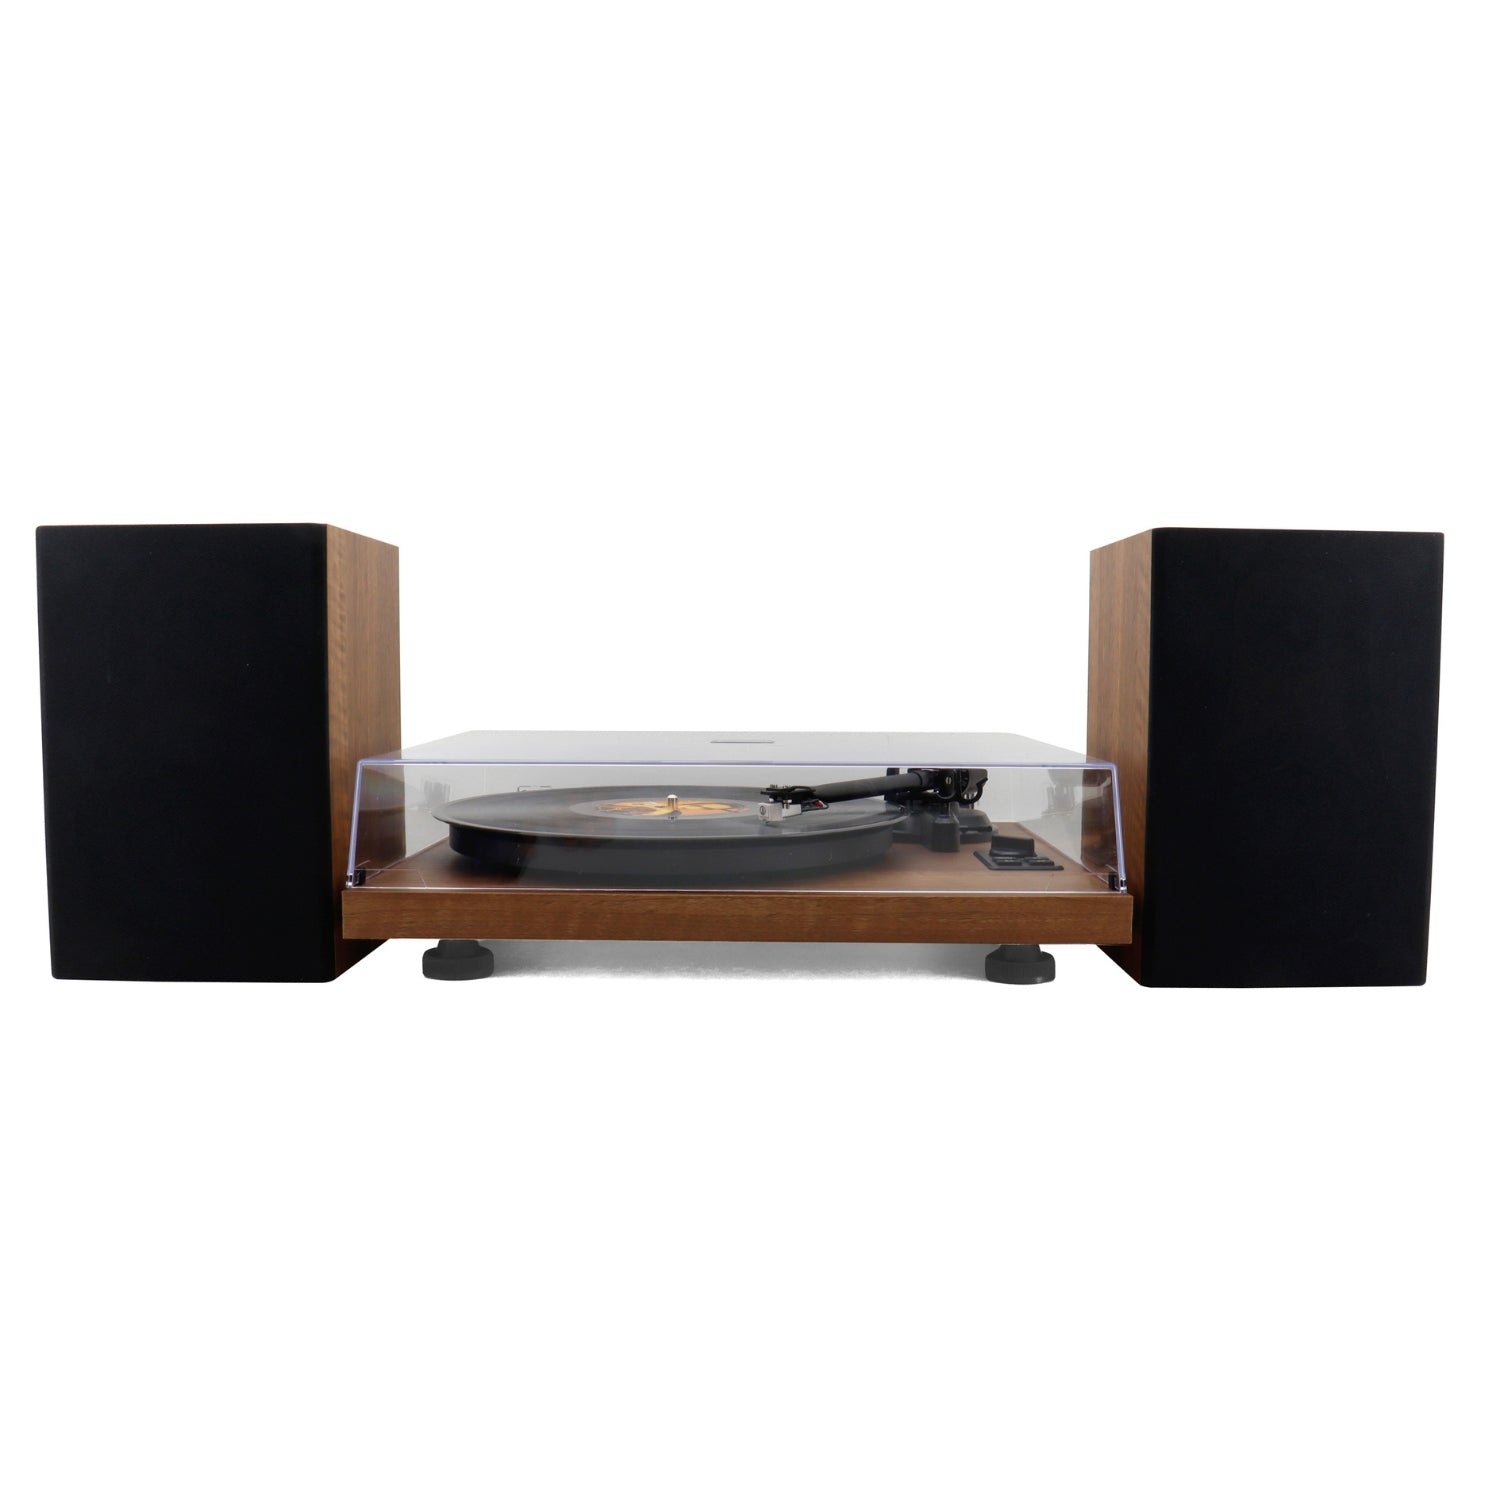 Soundmaster EliteLine PL711 platine vinyle en bois Audio Technica Bluetooth encodage PC haut-parleur bass reflex 2 voies